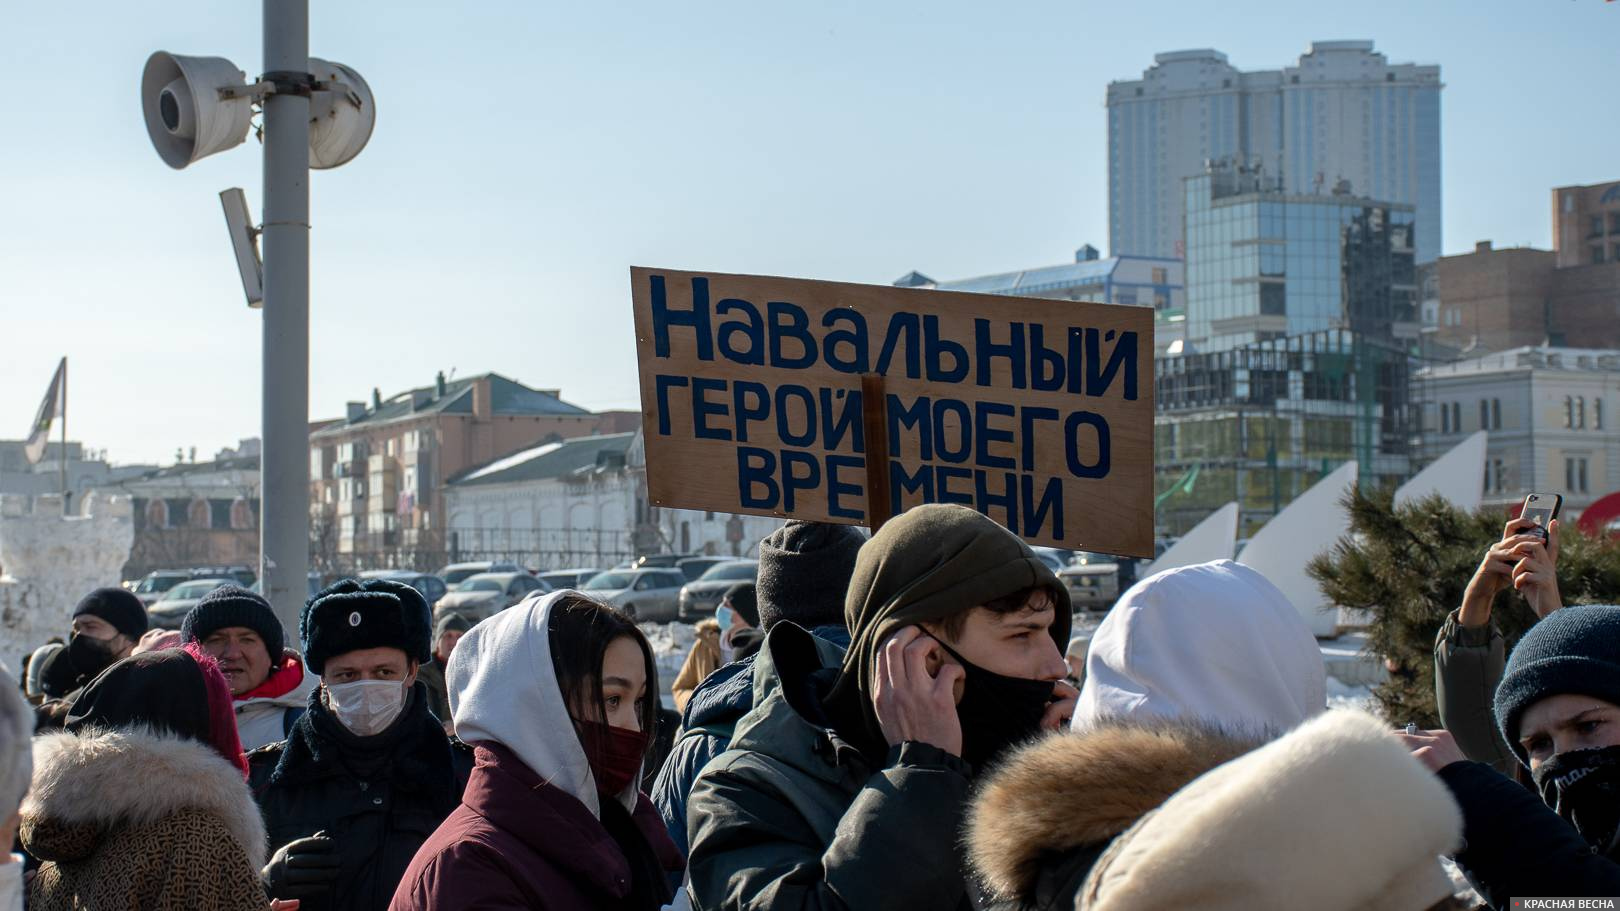 Плакат в поддержку Навального, Владивосток, 23.01.2021